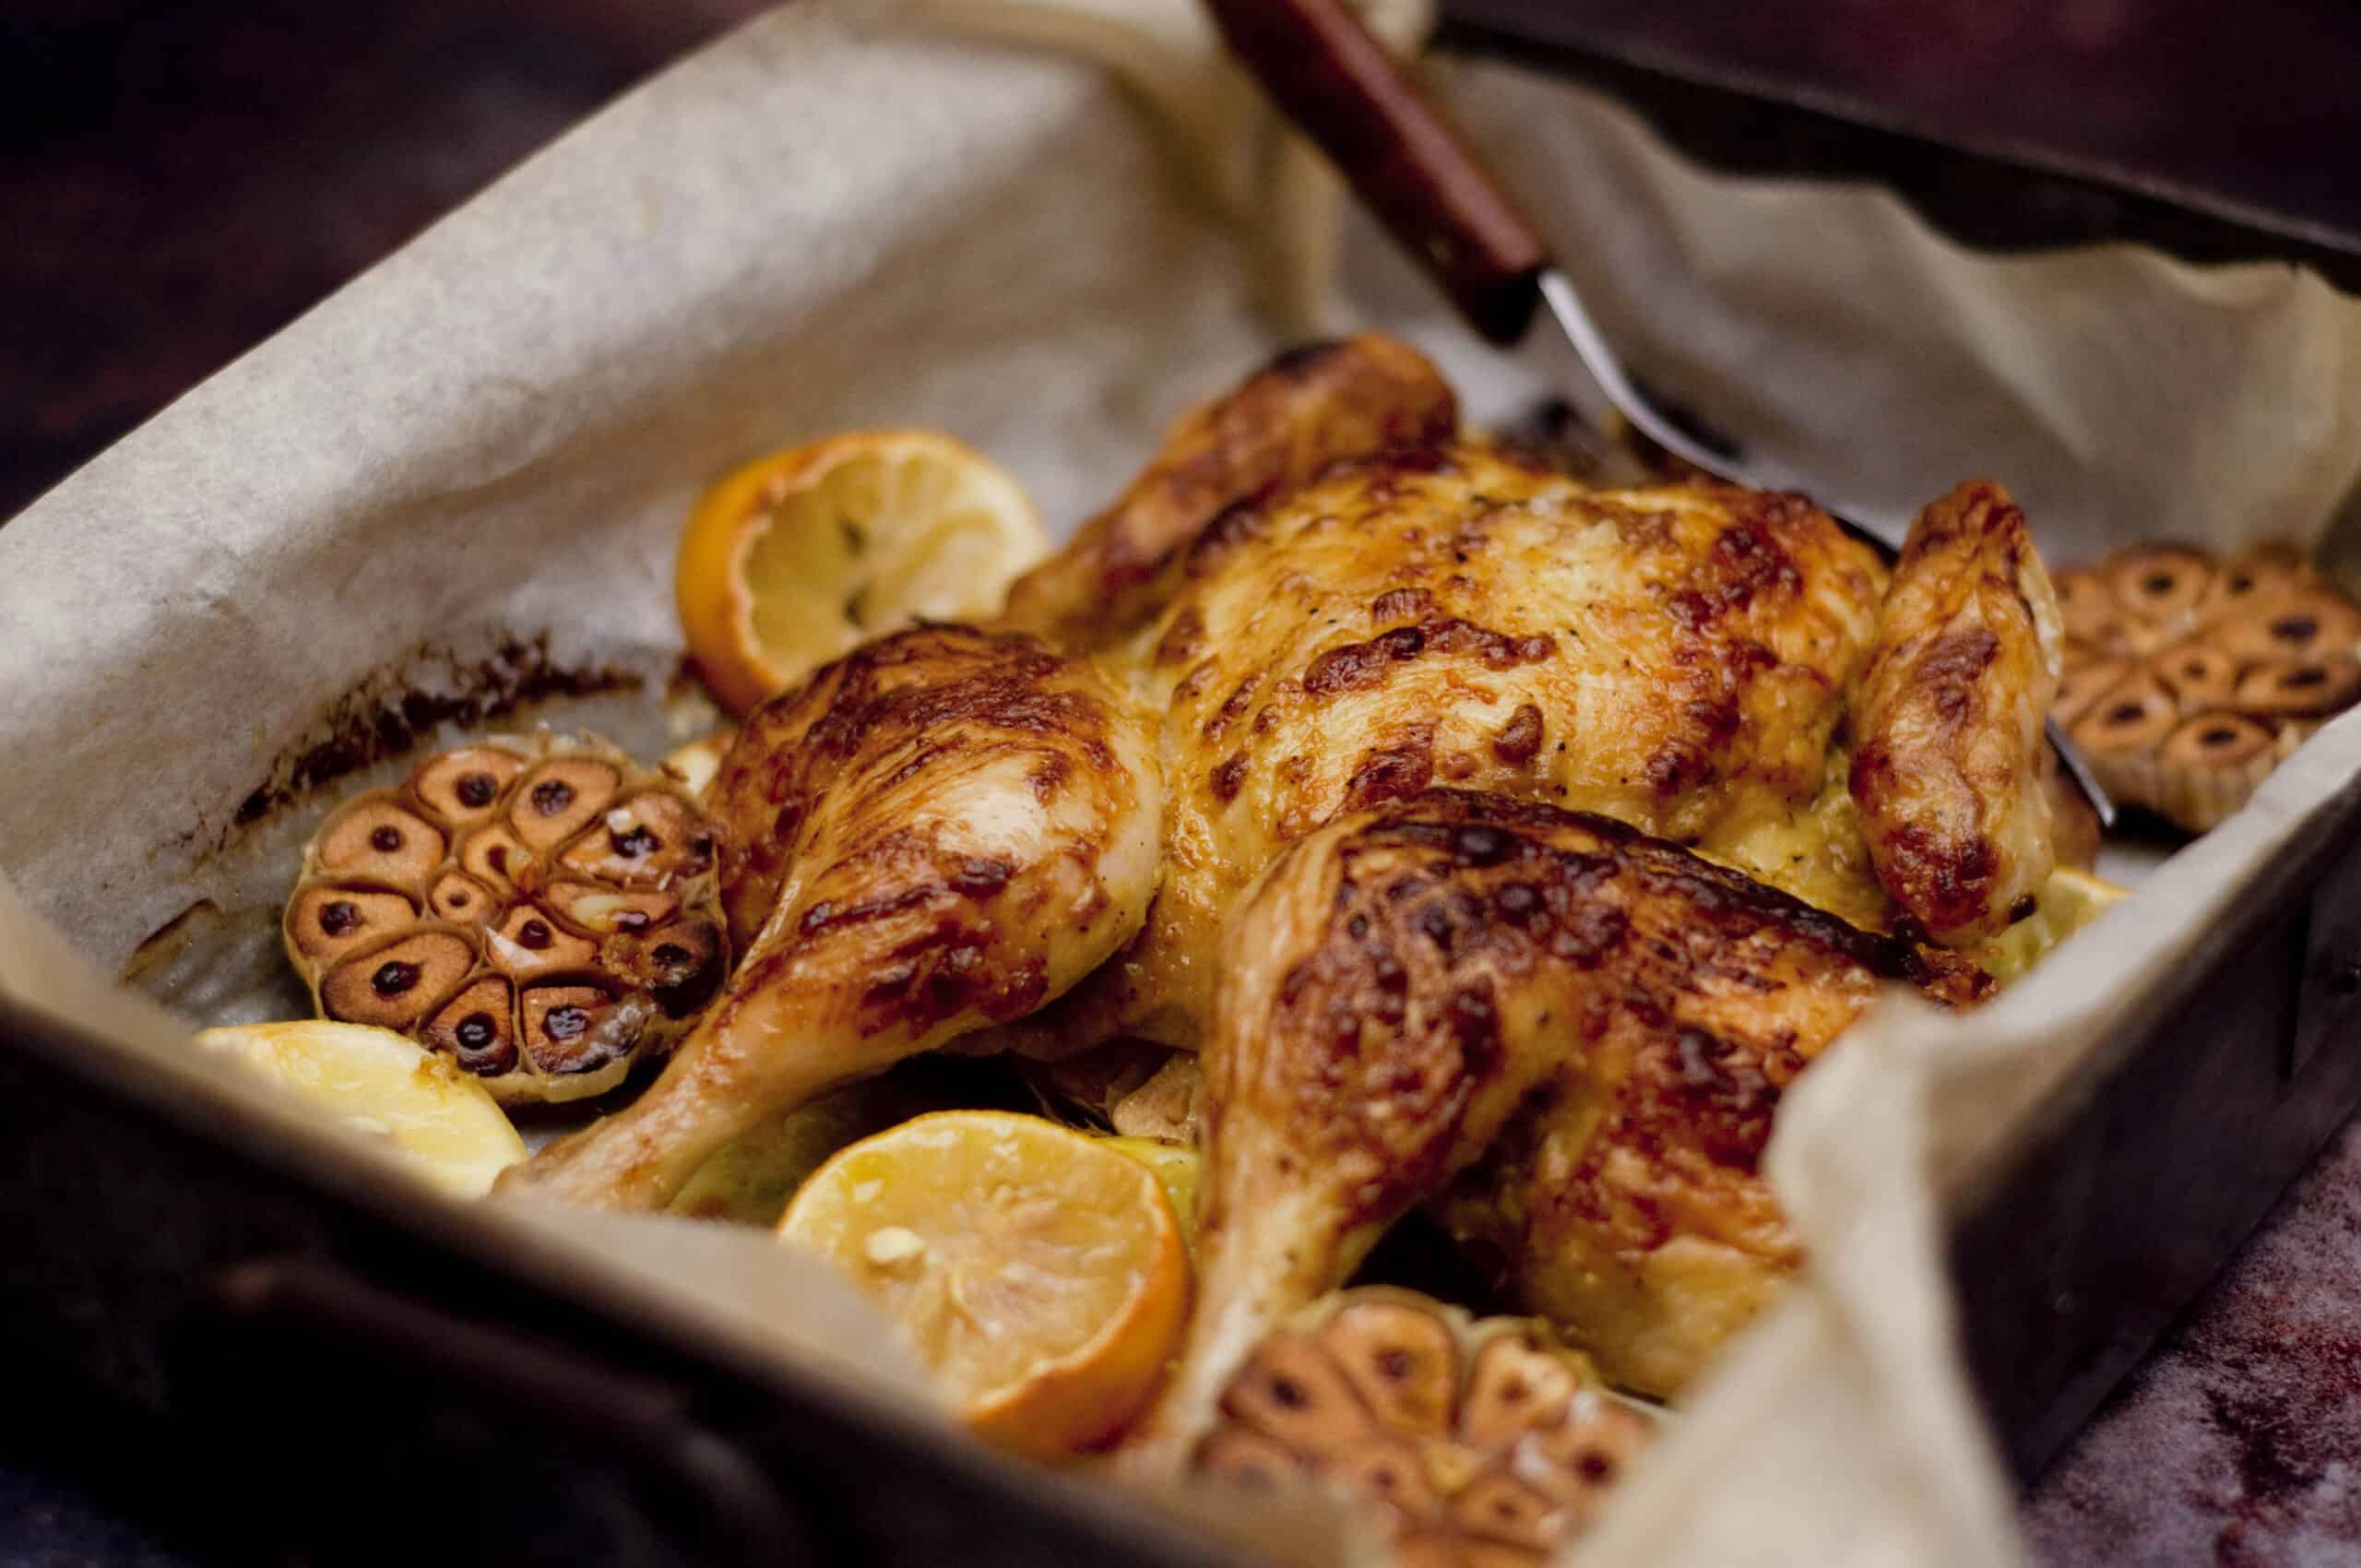 uitzending Nuchter Stoutmoedig Makkelijke kip uit de oven - It's Not About Cooking